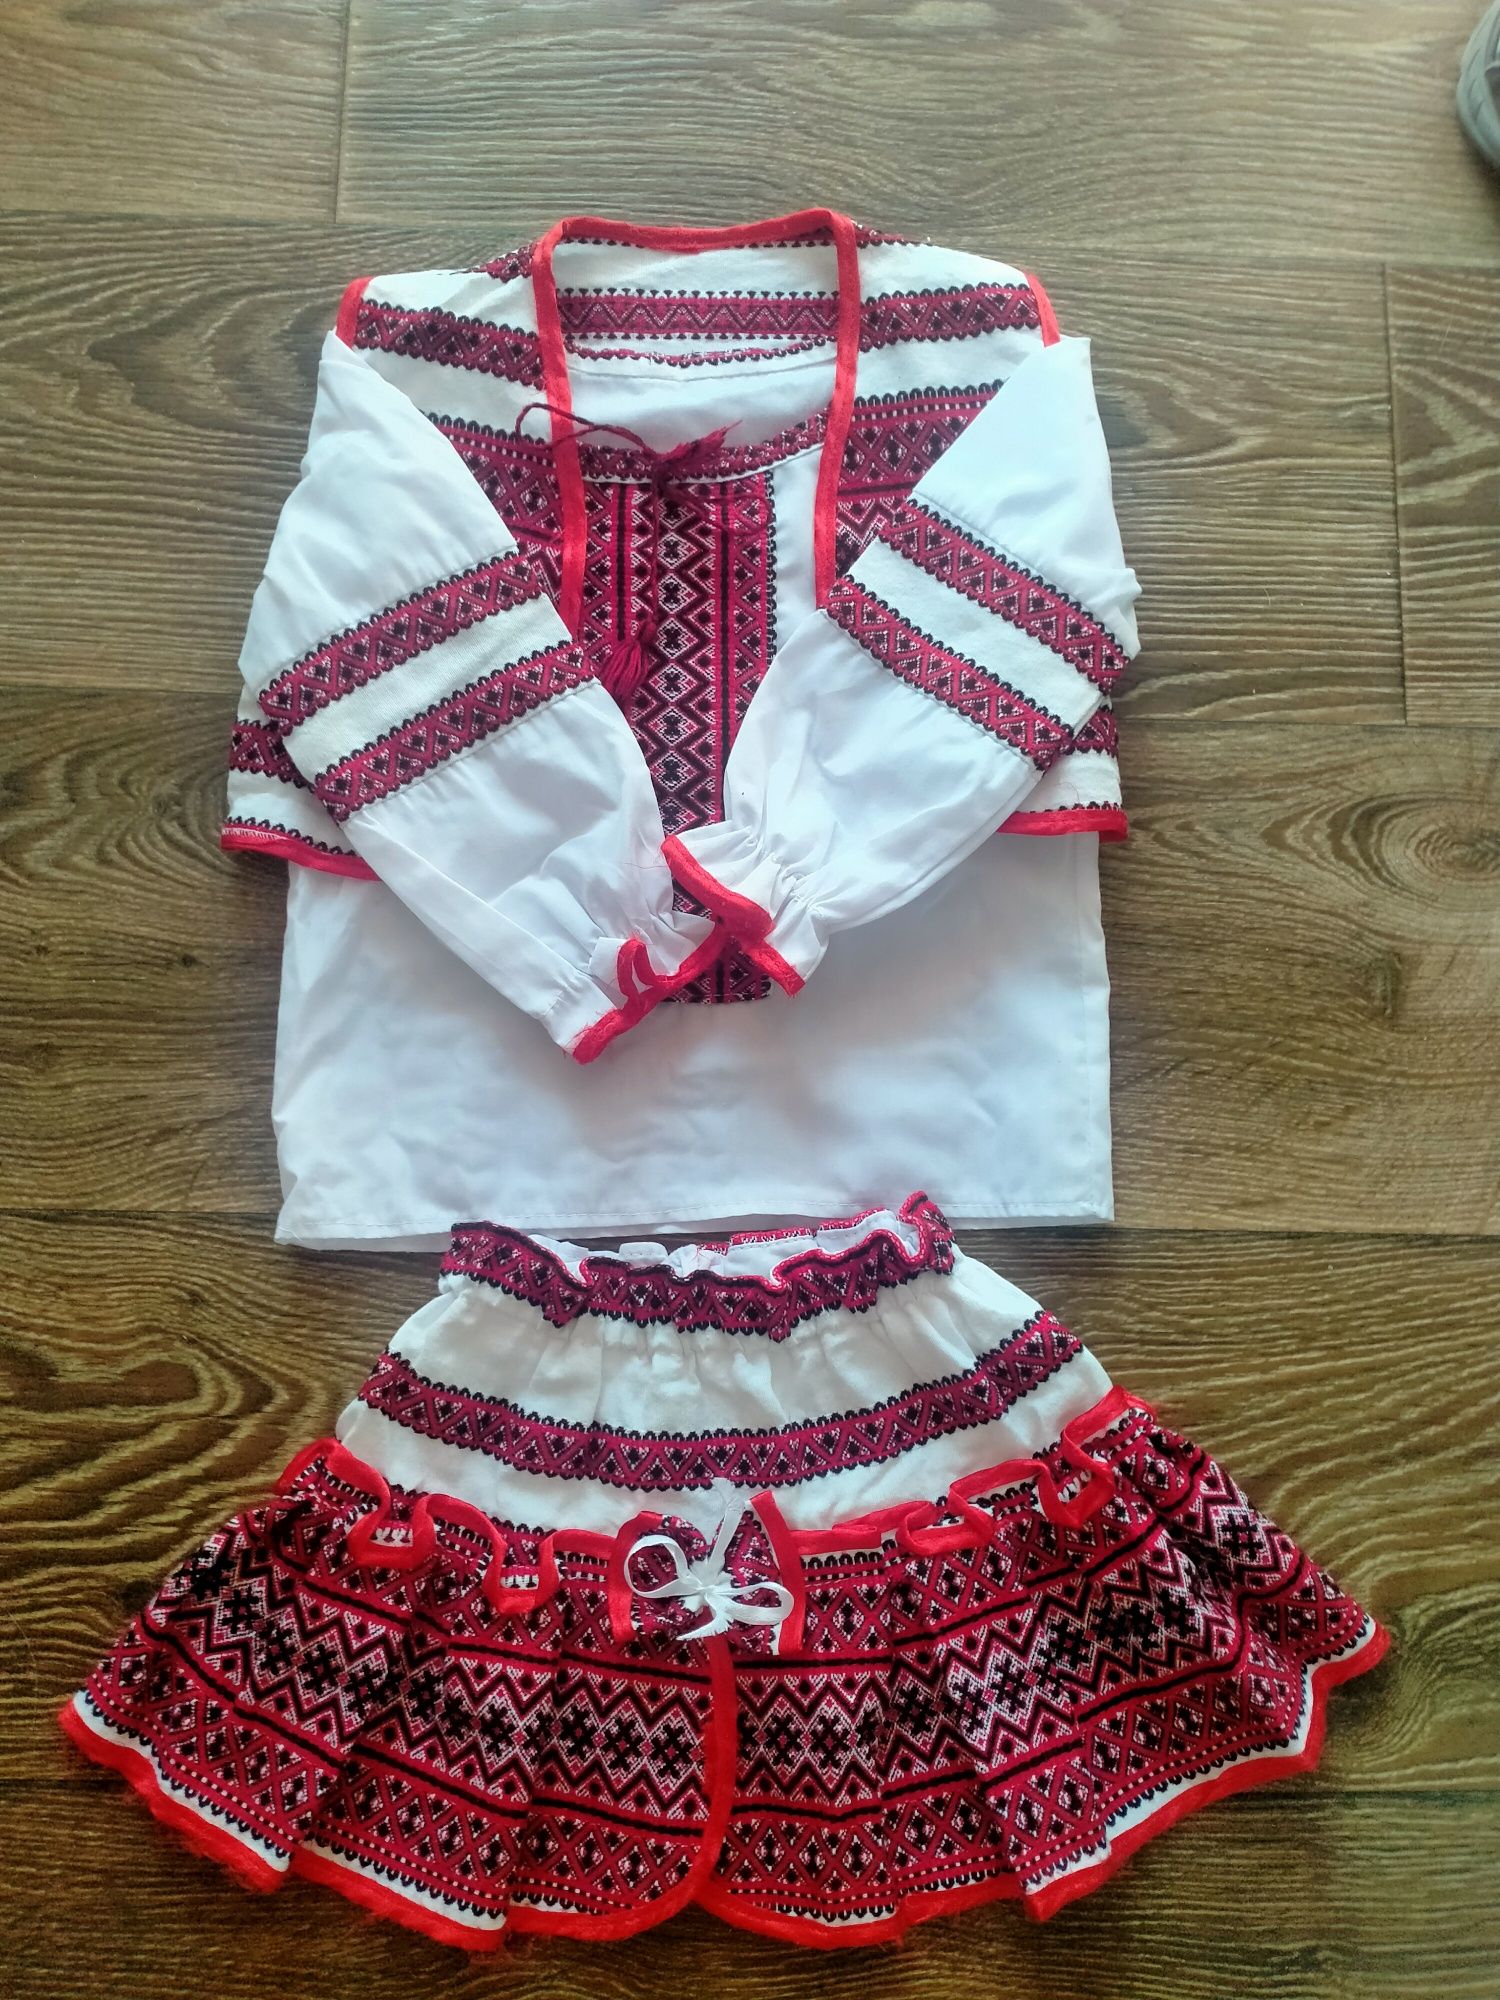 Украинский костюм для девочки